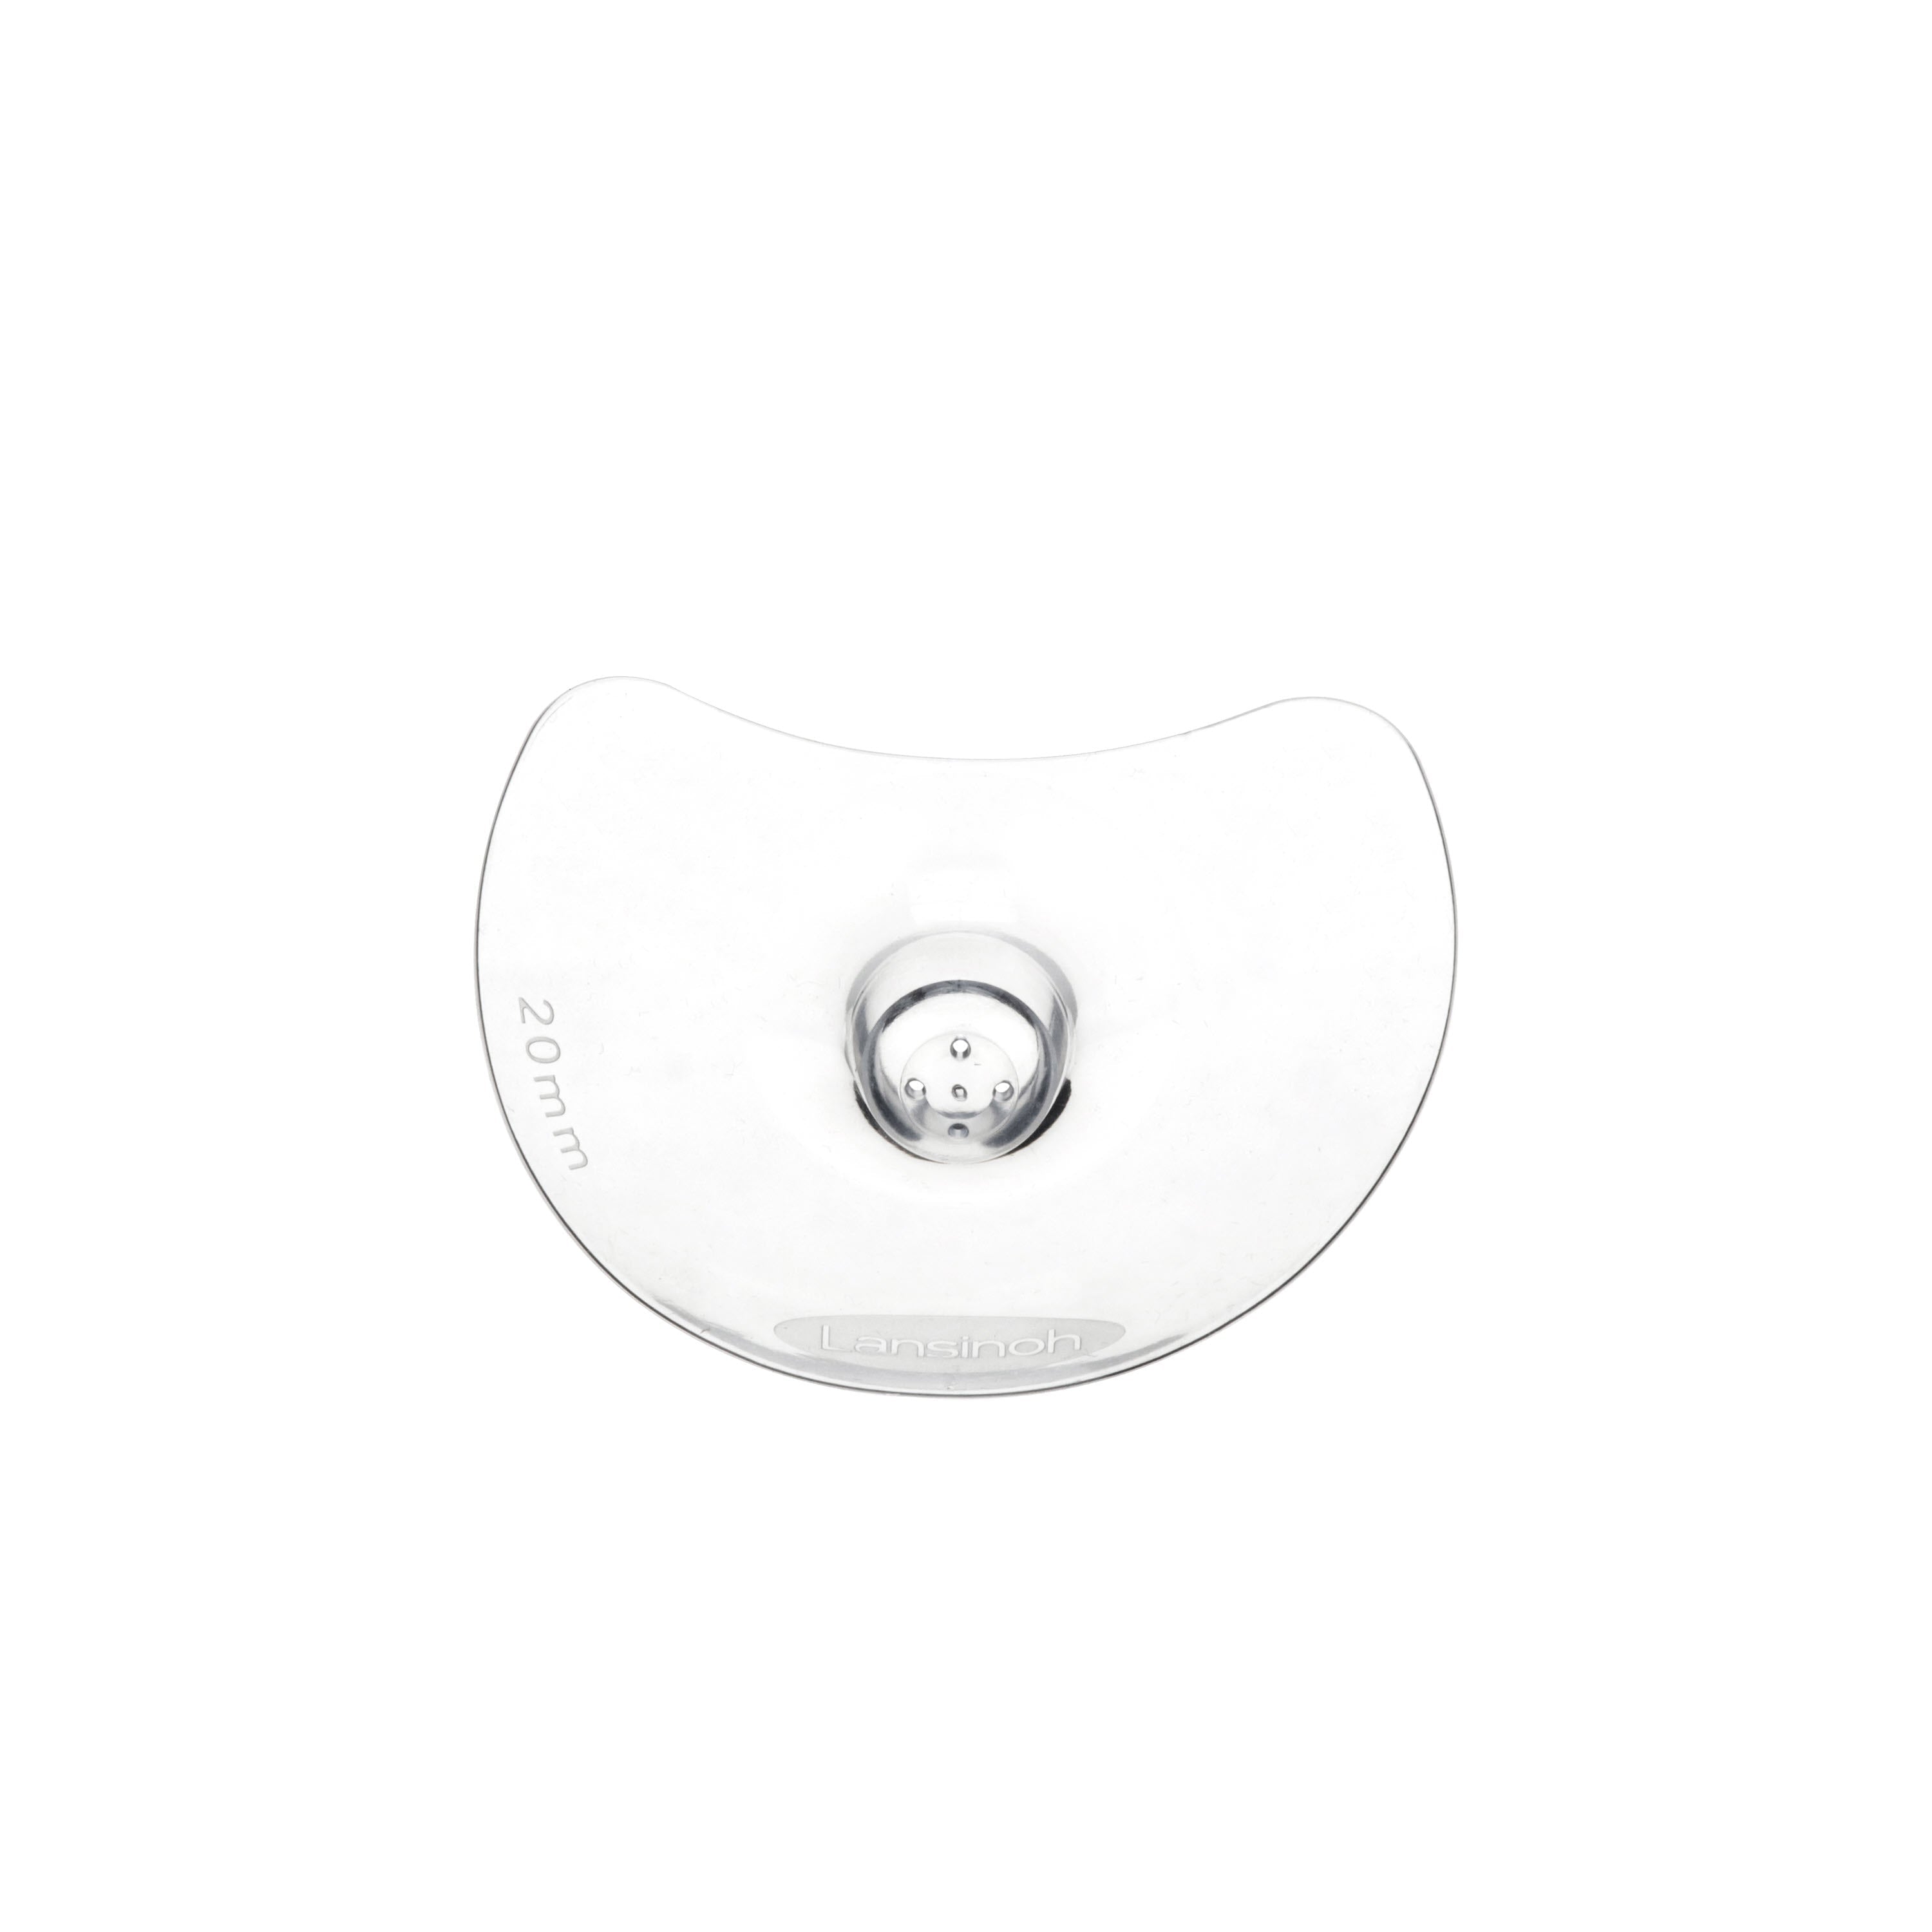 Lansinoh Nipple Shield, 2 ct